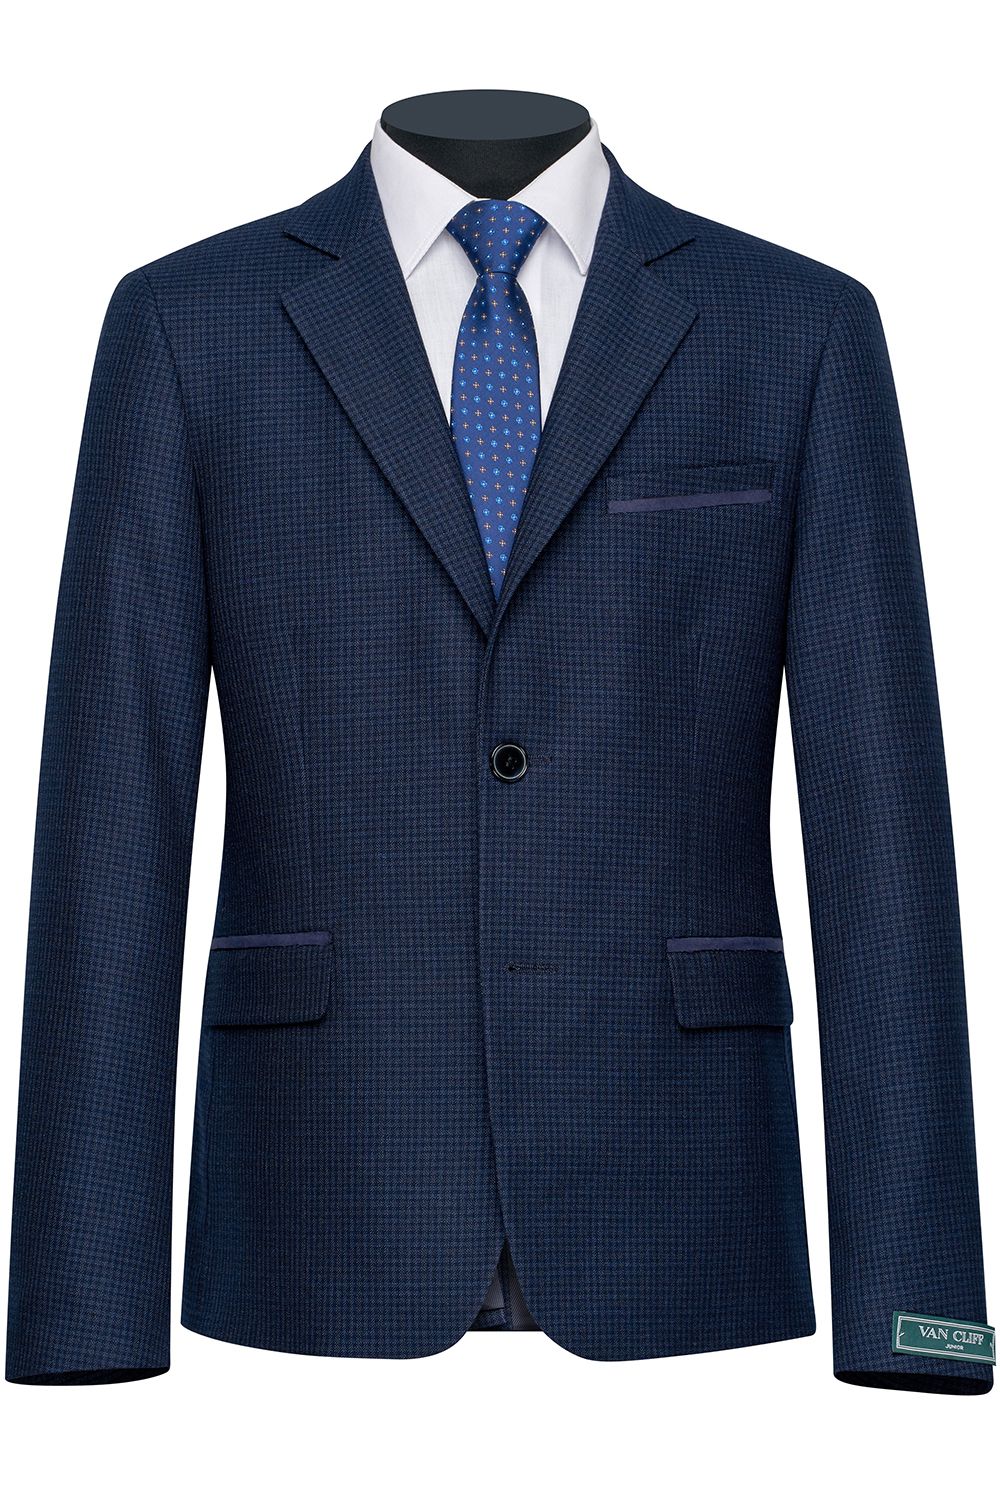 Пиджак Van Cliff, размер 128 (30), цвет синий A99414 - фото 1